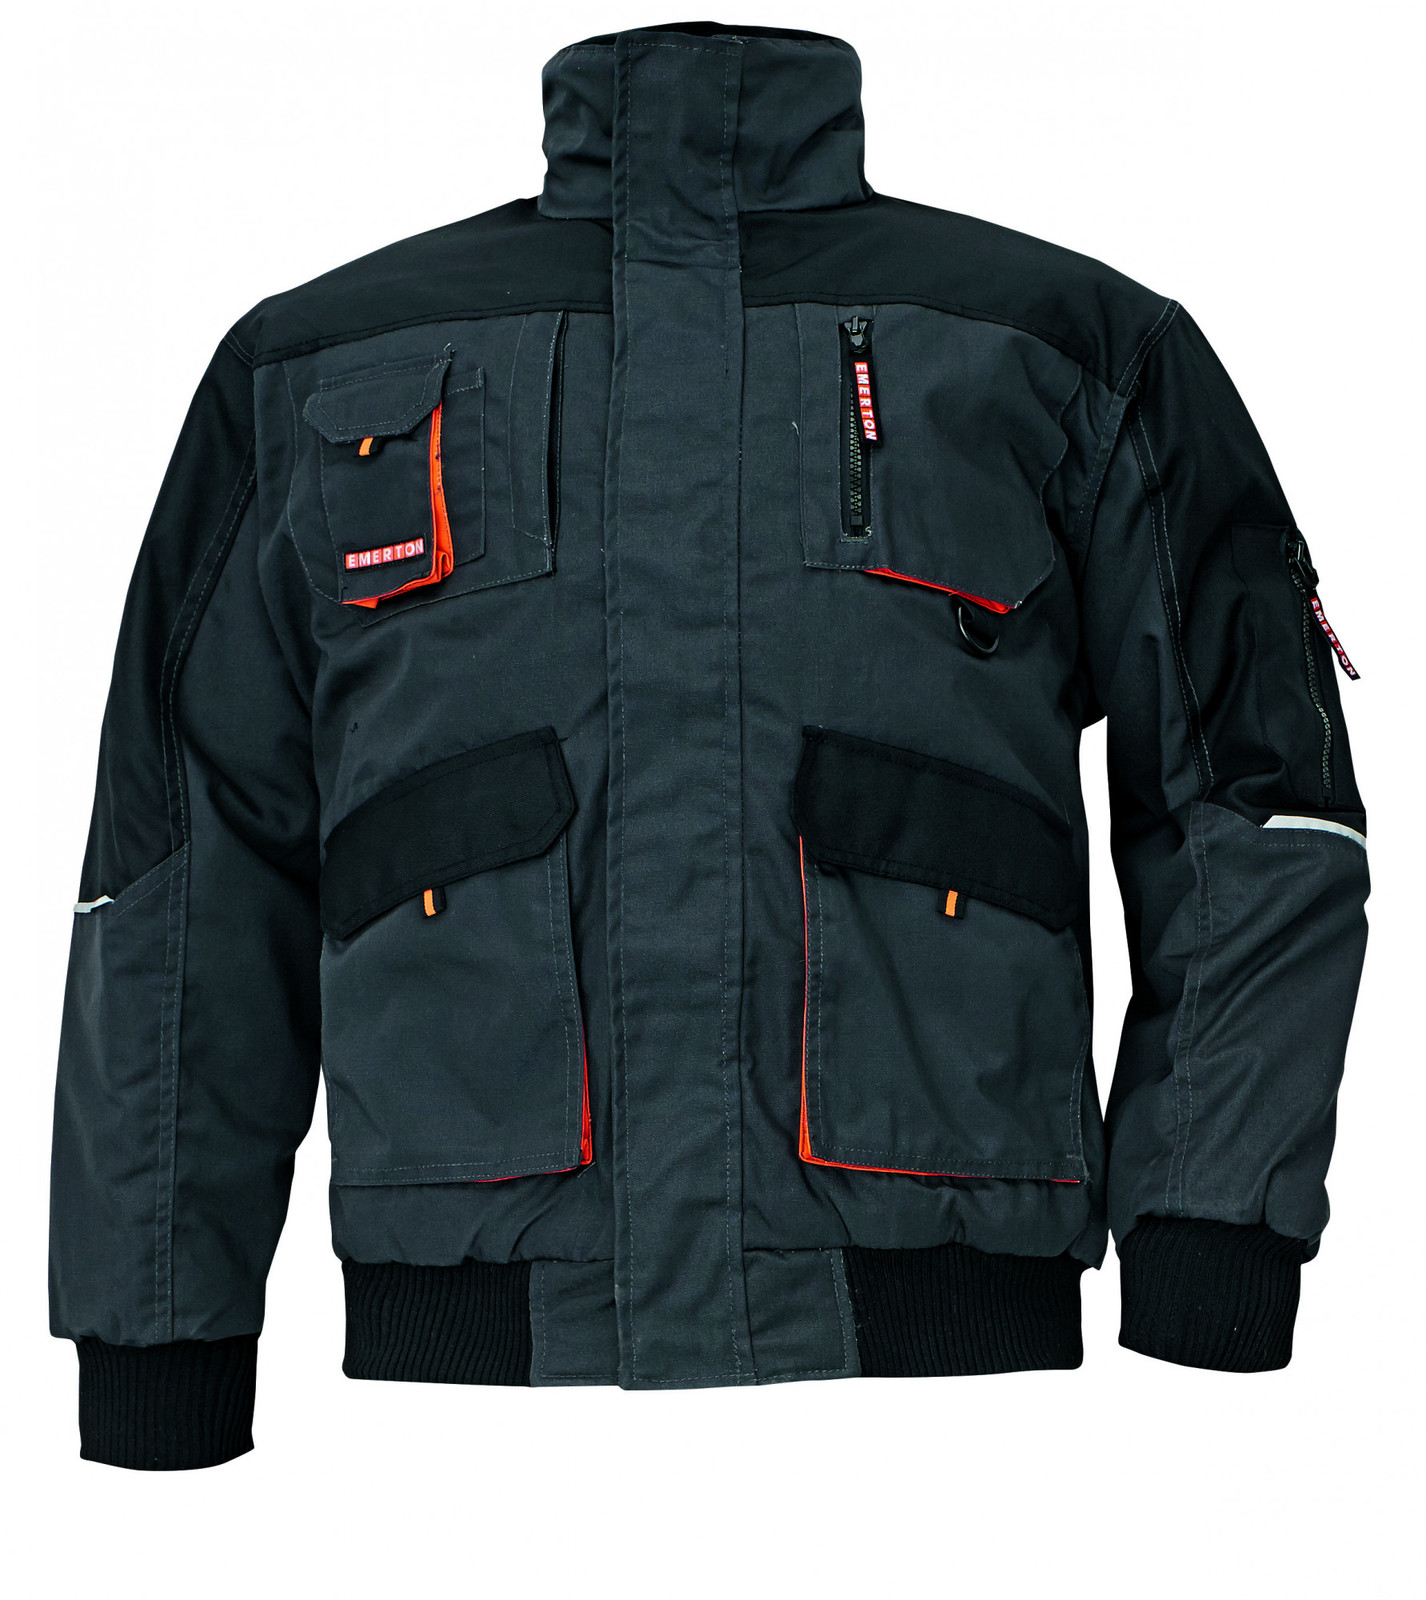 Zimná montérková bunda Emerton Pilot - veľkosť: M, farba: čierna